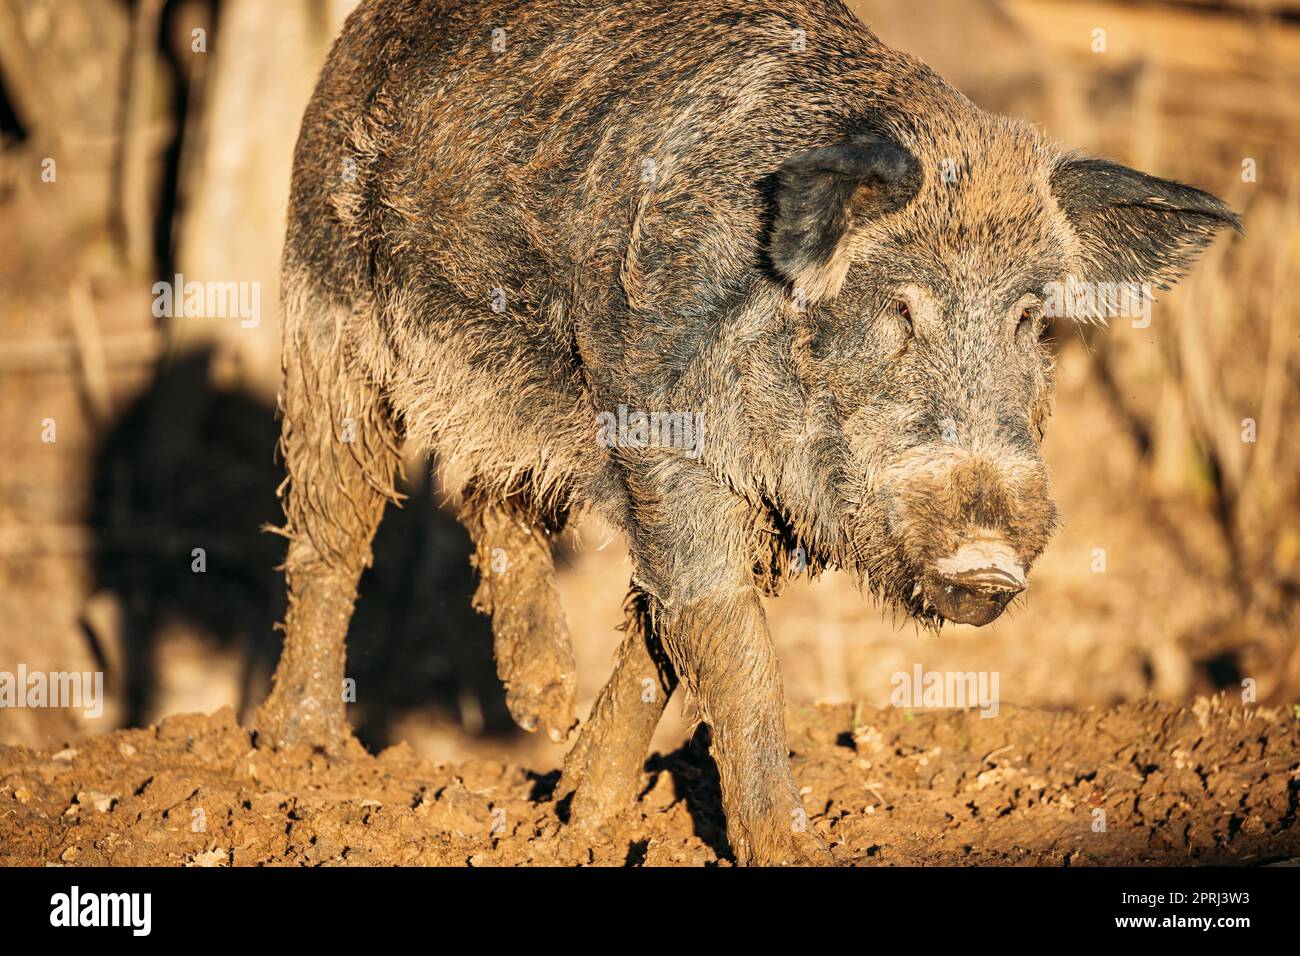 Bielorrusia. Jabalí o sus Scrofa, también conocido como el vino Salvaje, Eurasian Wild Pig Walking in Autumn Mood. Jabalí Foto de stock